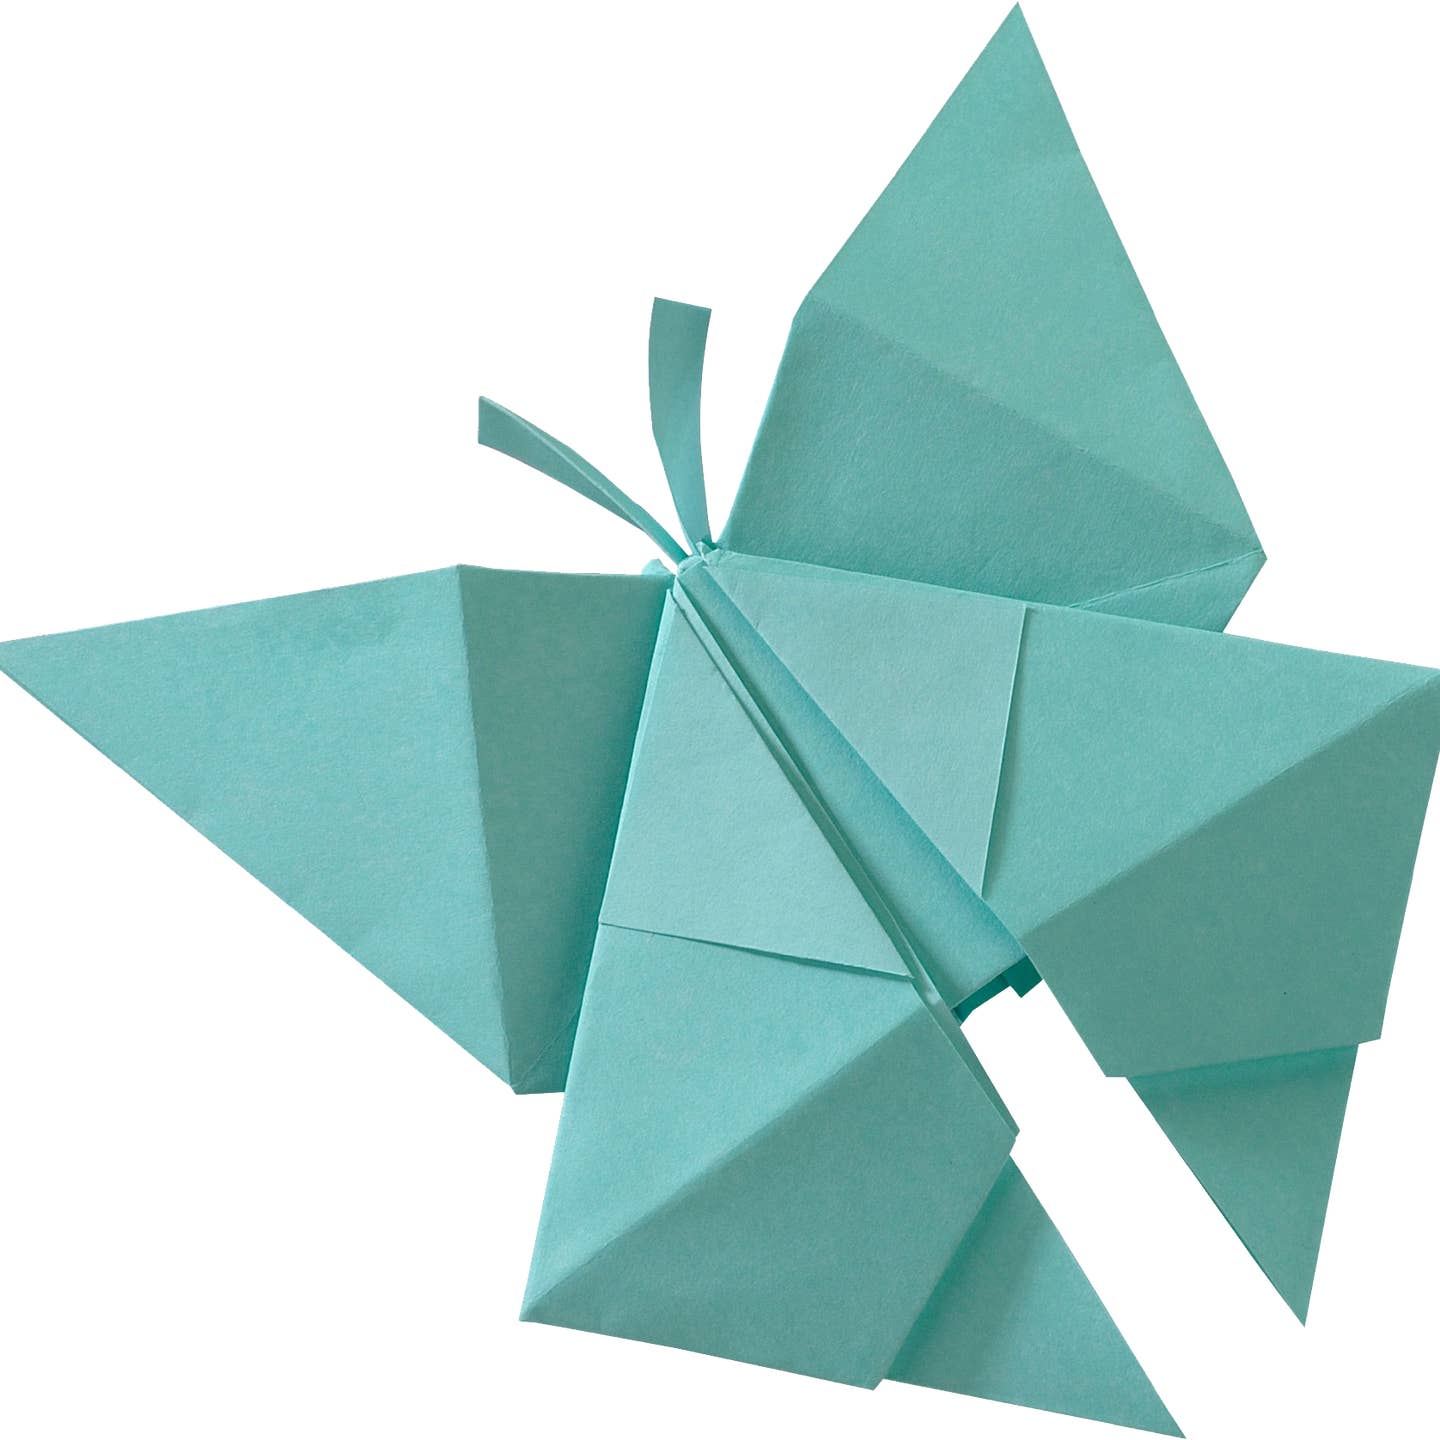 Origami Paper 20 Vivid Colors (500 Sheets)